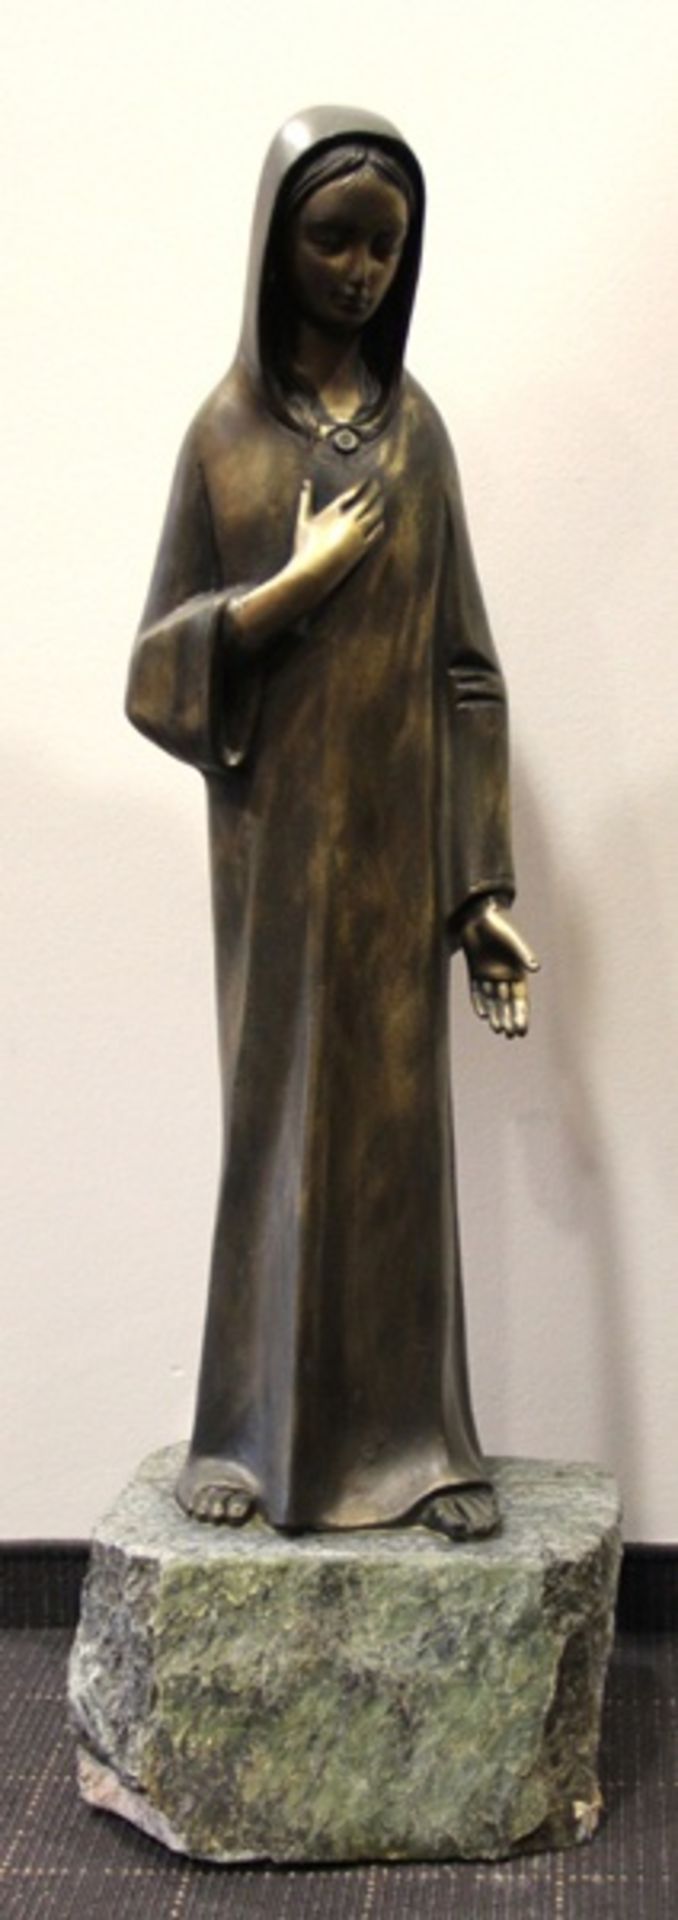 große Bronzemadonna20. Jhd., Bronze, große stehende Madonna, sie trägt ein langes schliches